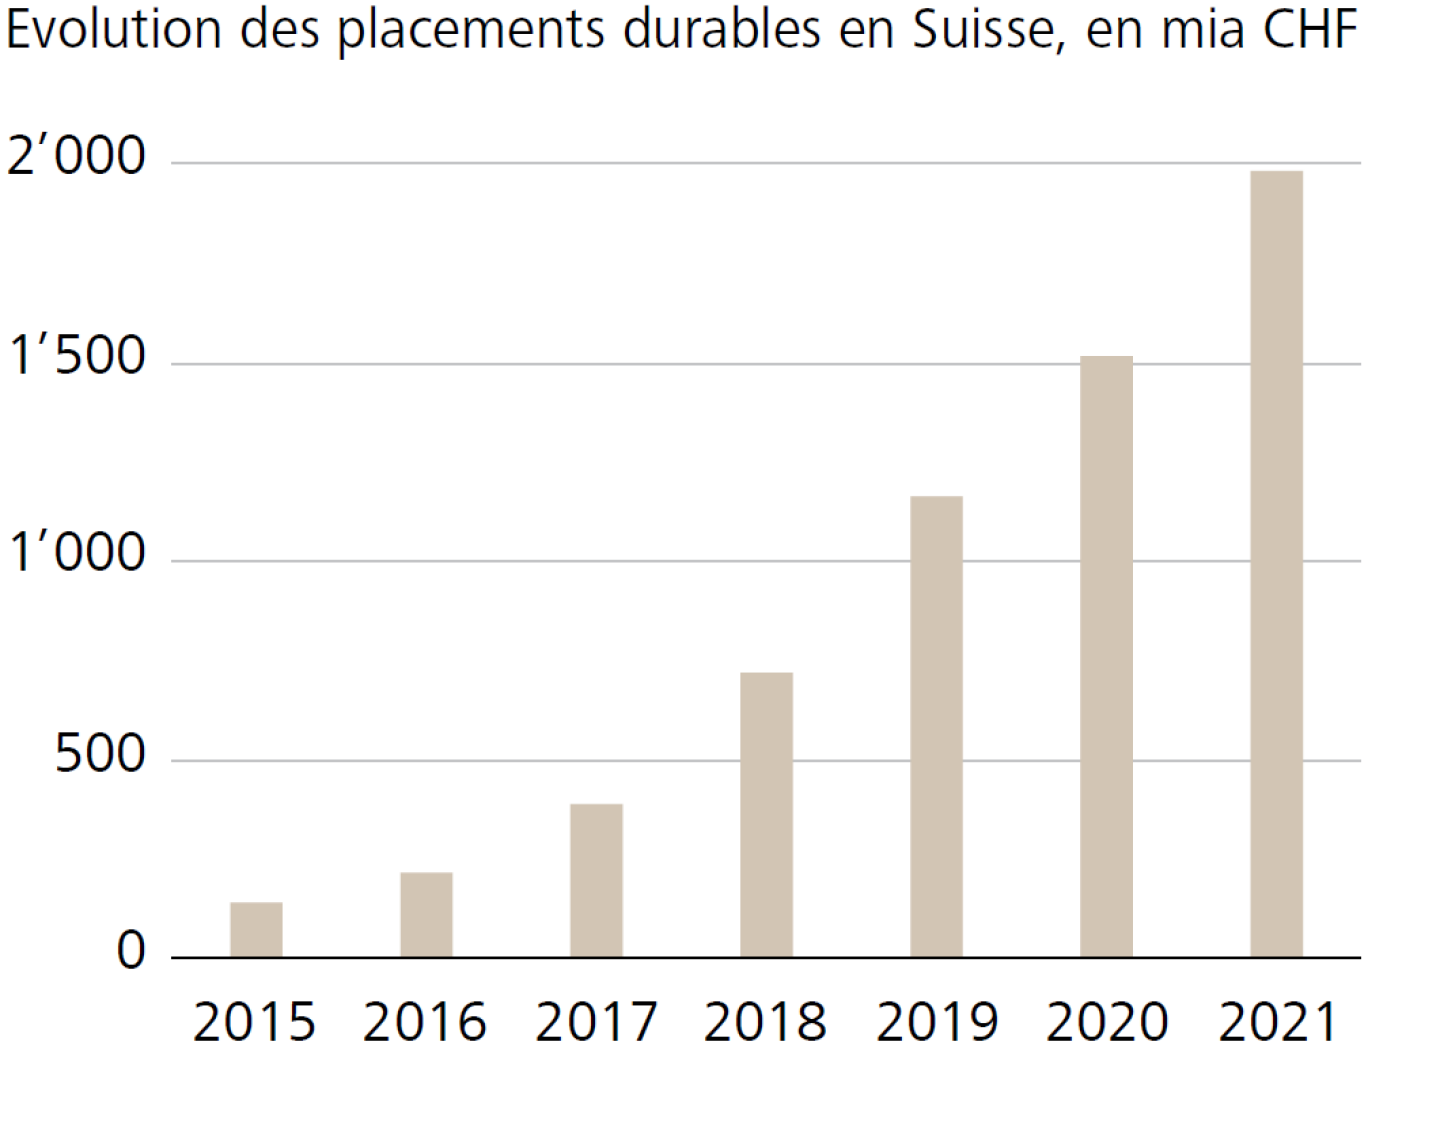 Sviluppo degli investimenti sostenibili in Svizzera, in miliardi di CHF 